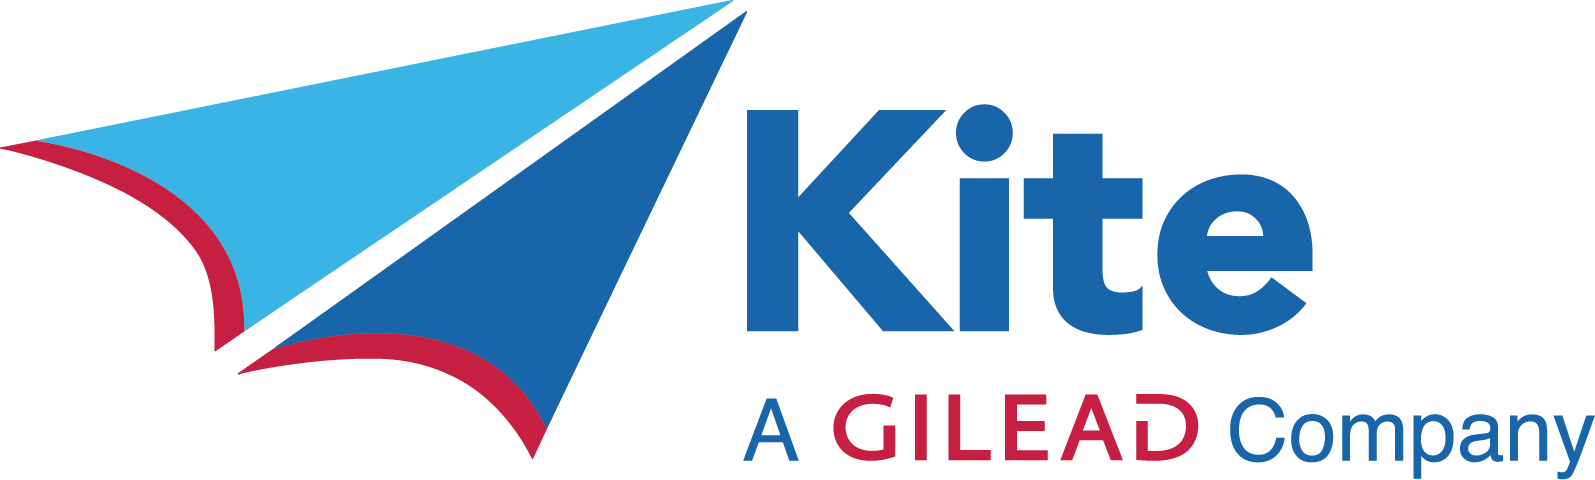 logo-kite - Copy.png